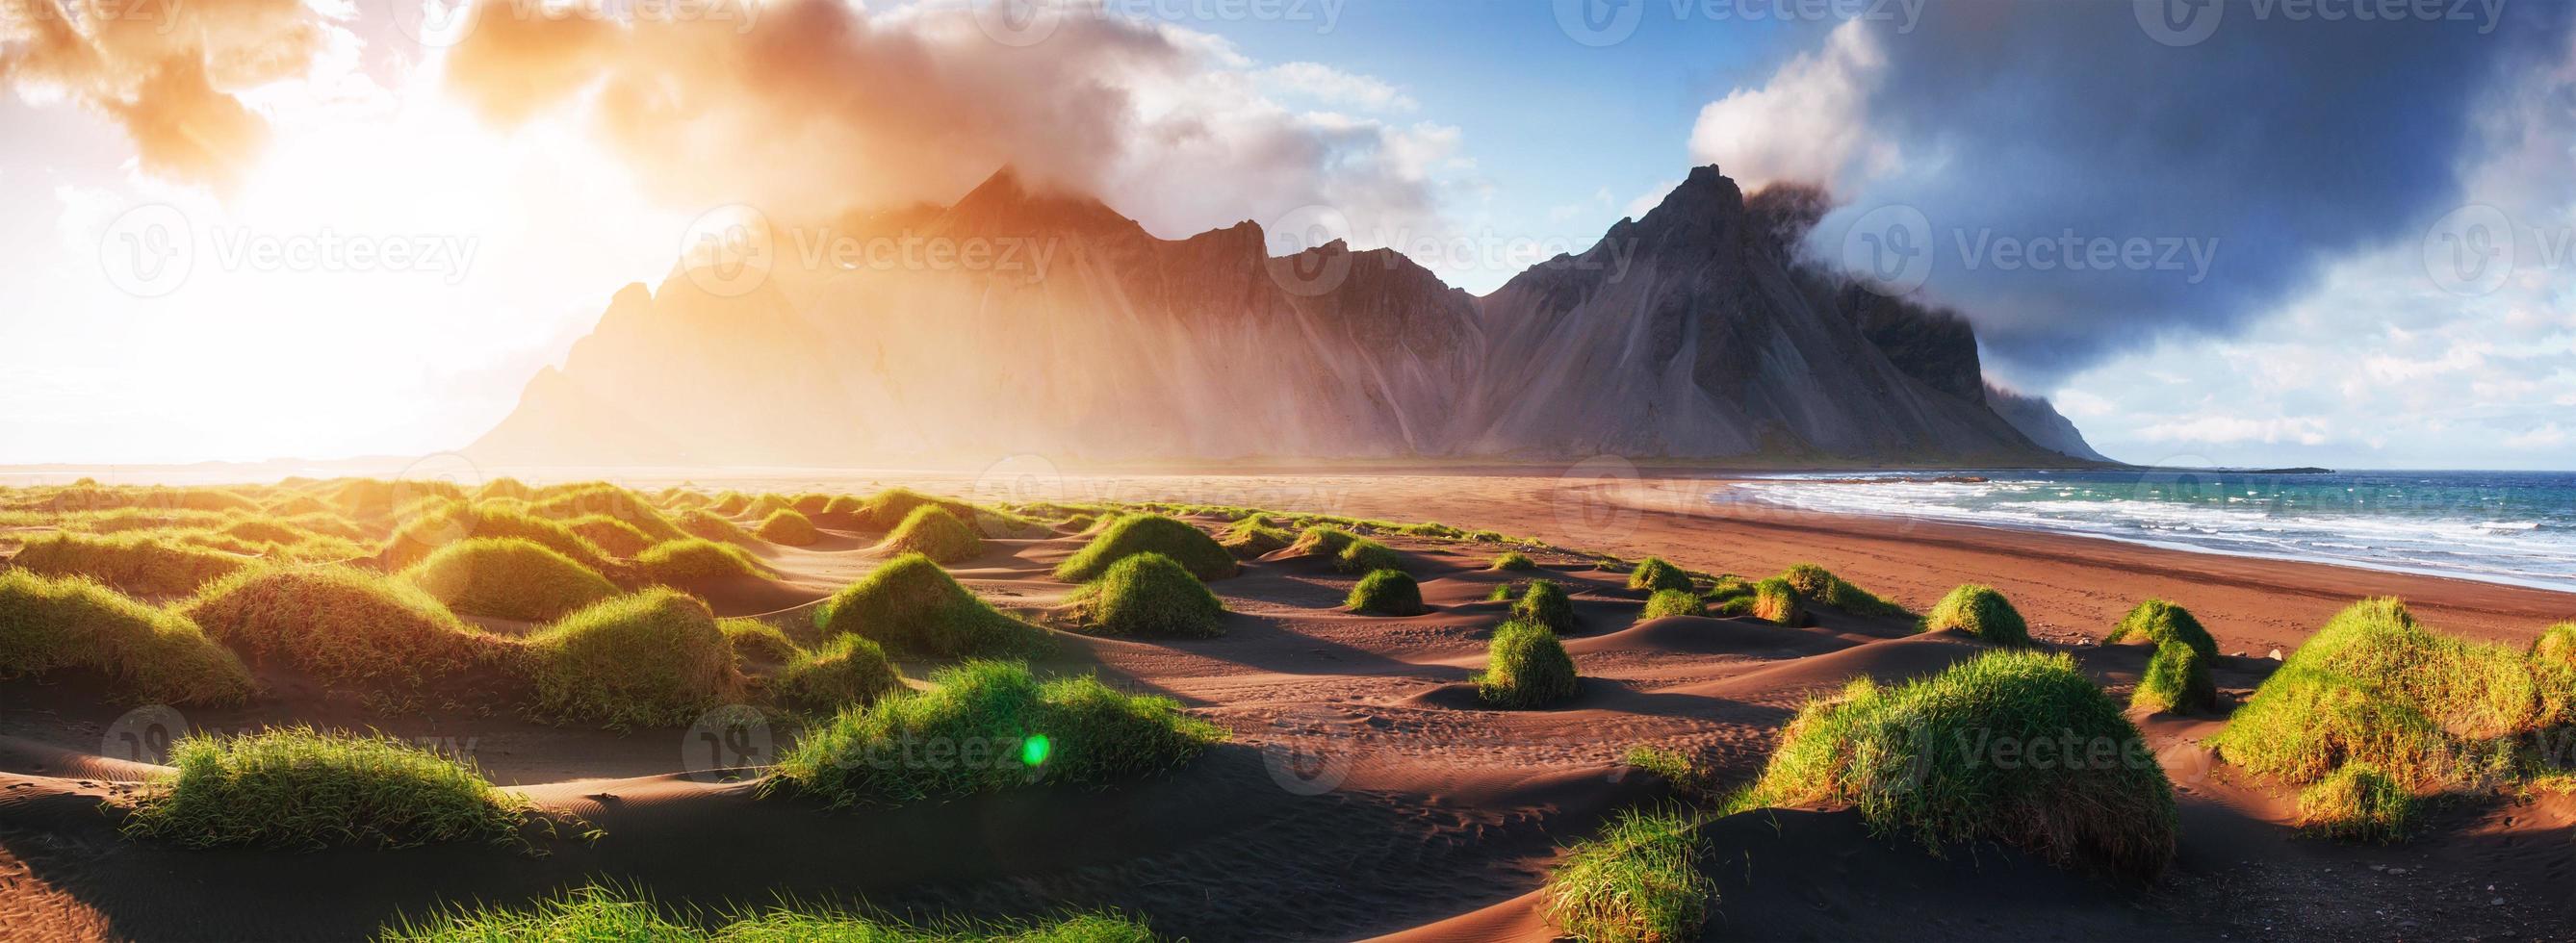 puesta de sol mágica en una playa de arena. mundo de la belleza pavo foto